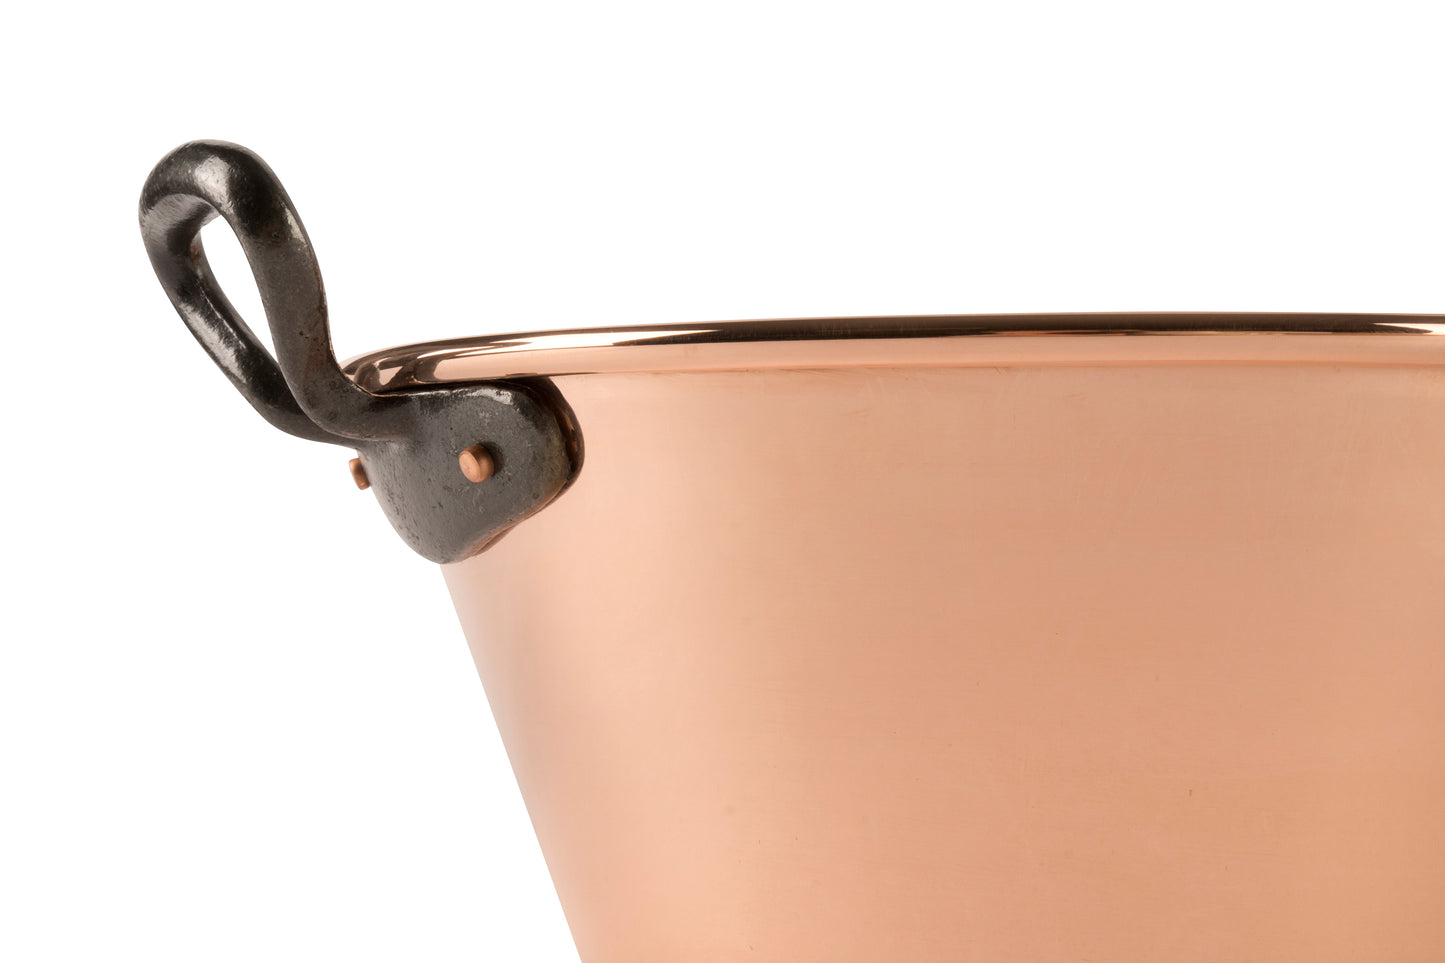 Copper jam pot with cast iron handles, 3.1 qt